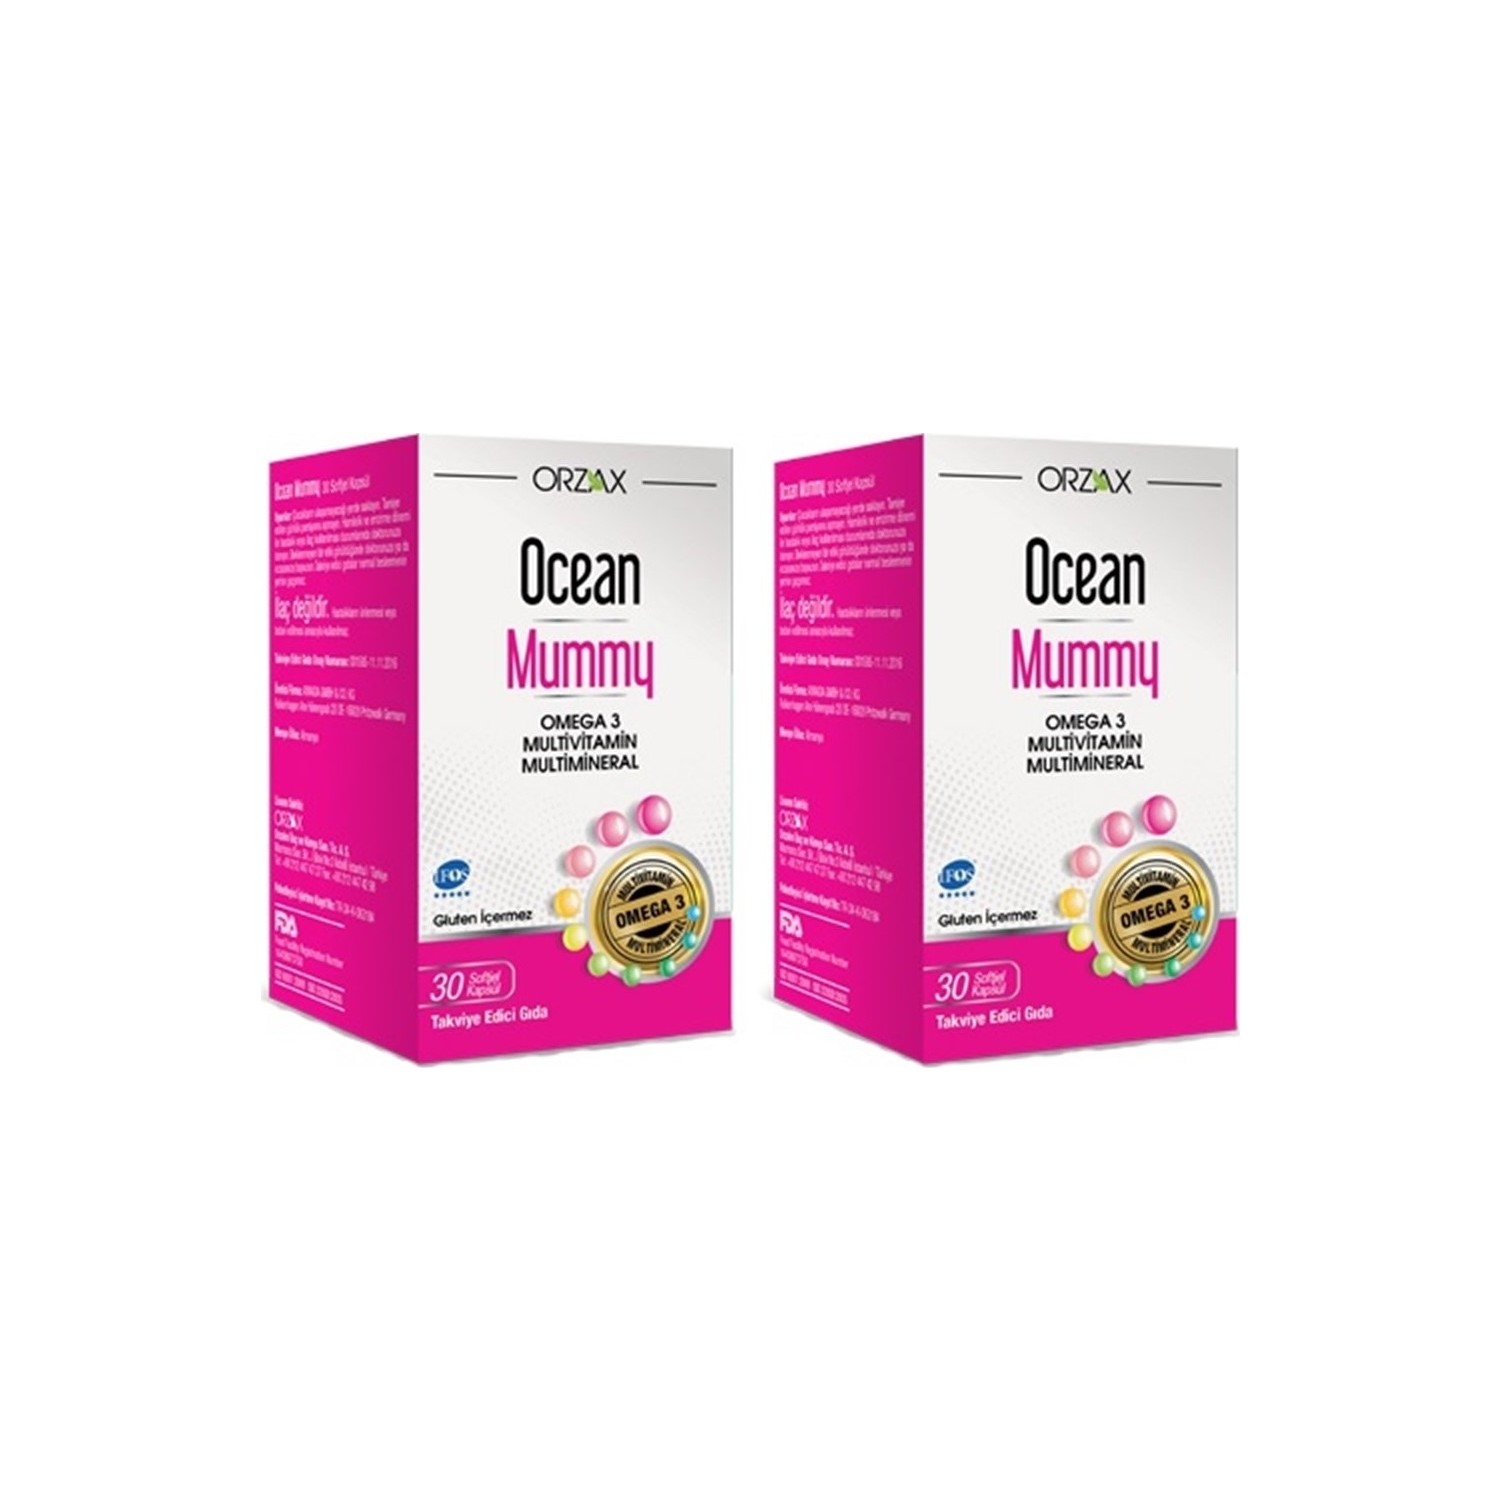 Мультивитамин Омега-3 Ocean Mummy, 2 упаковки по 30 капсул пищевая добавка fibromag naveh pharma для облегчения боли и усталости при фибромиалгии 30 капсул